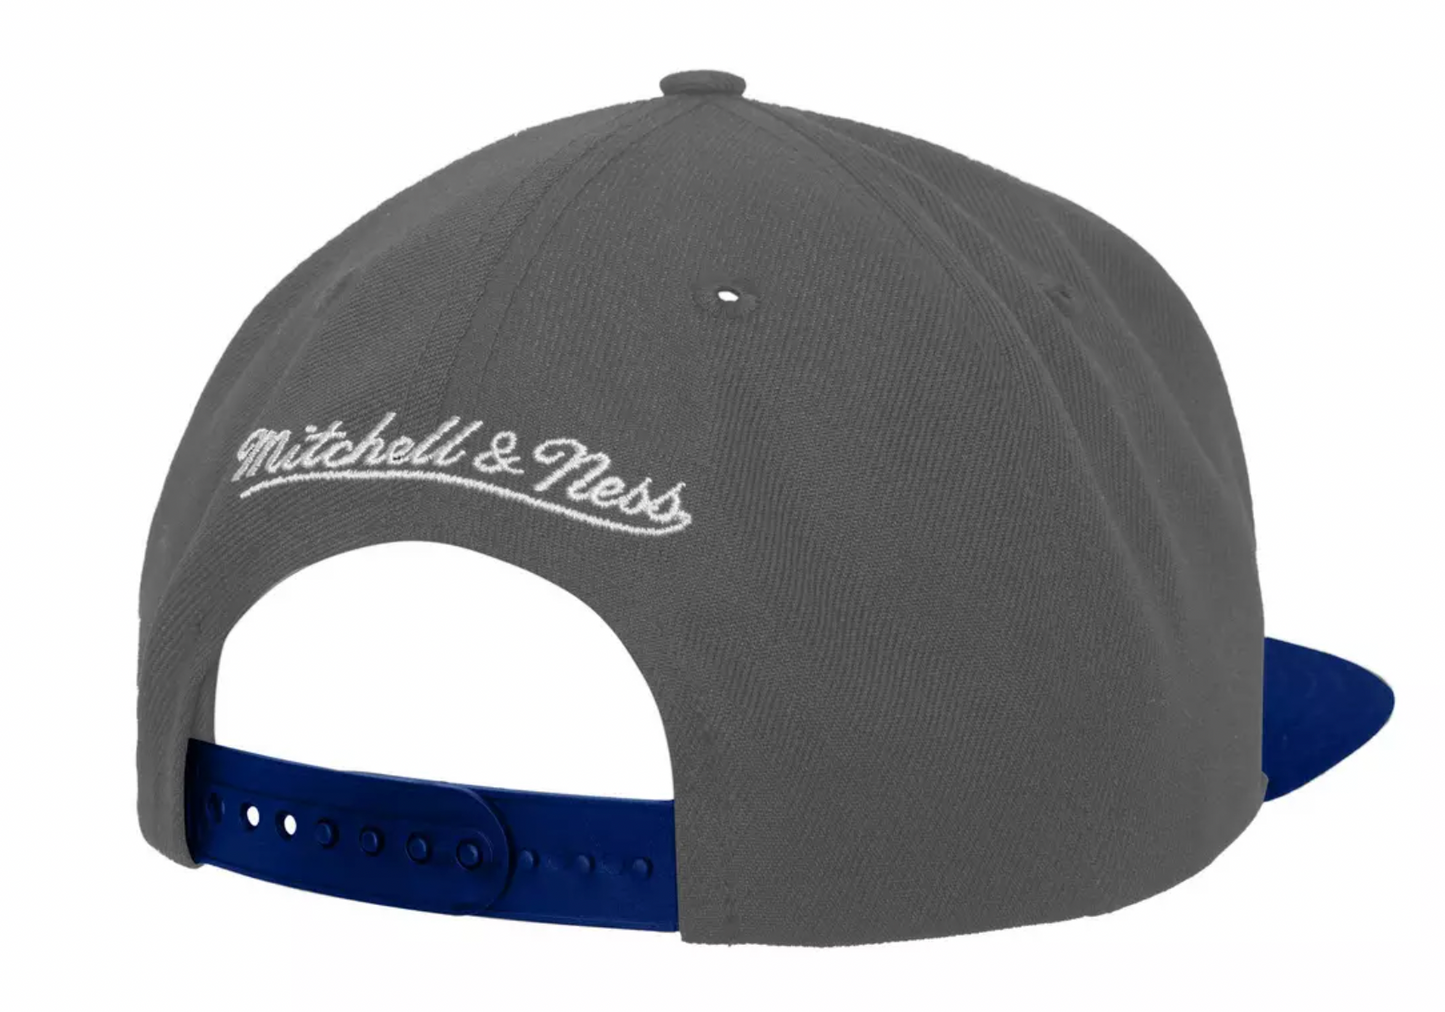 Men's New Jersey Nets Basic Core HWC 2 Tone Gray/Royal Mitchell & Ness Snapback Hat